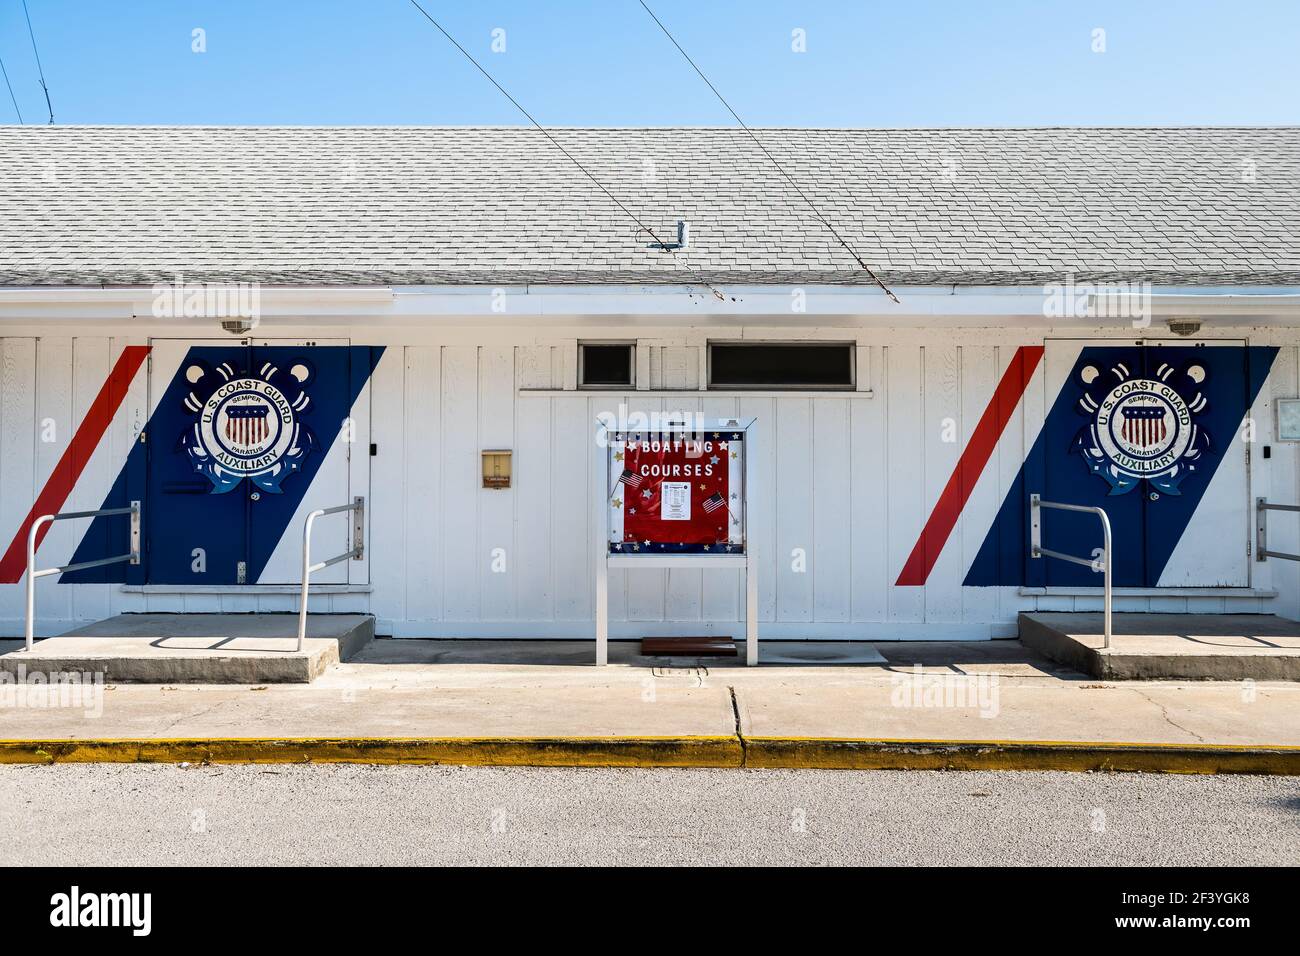 Nápoles, EE.UU. - 30 de abril de 2018: Guardia costera DE EE.UU. Firma de construcción auxiliar para la patrulla de la guardia costera con cursos de navegación a bordo en el golfo de Florida de méxico cit Foto de stock